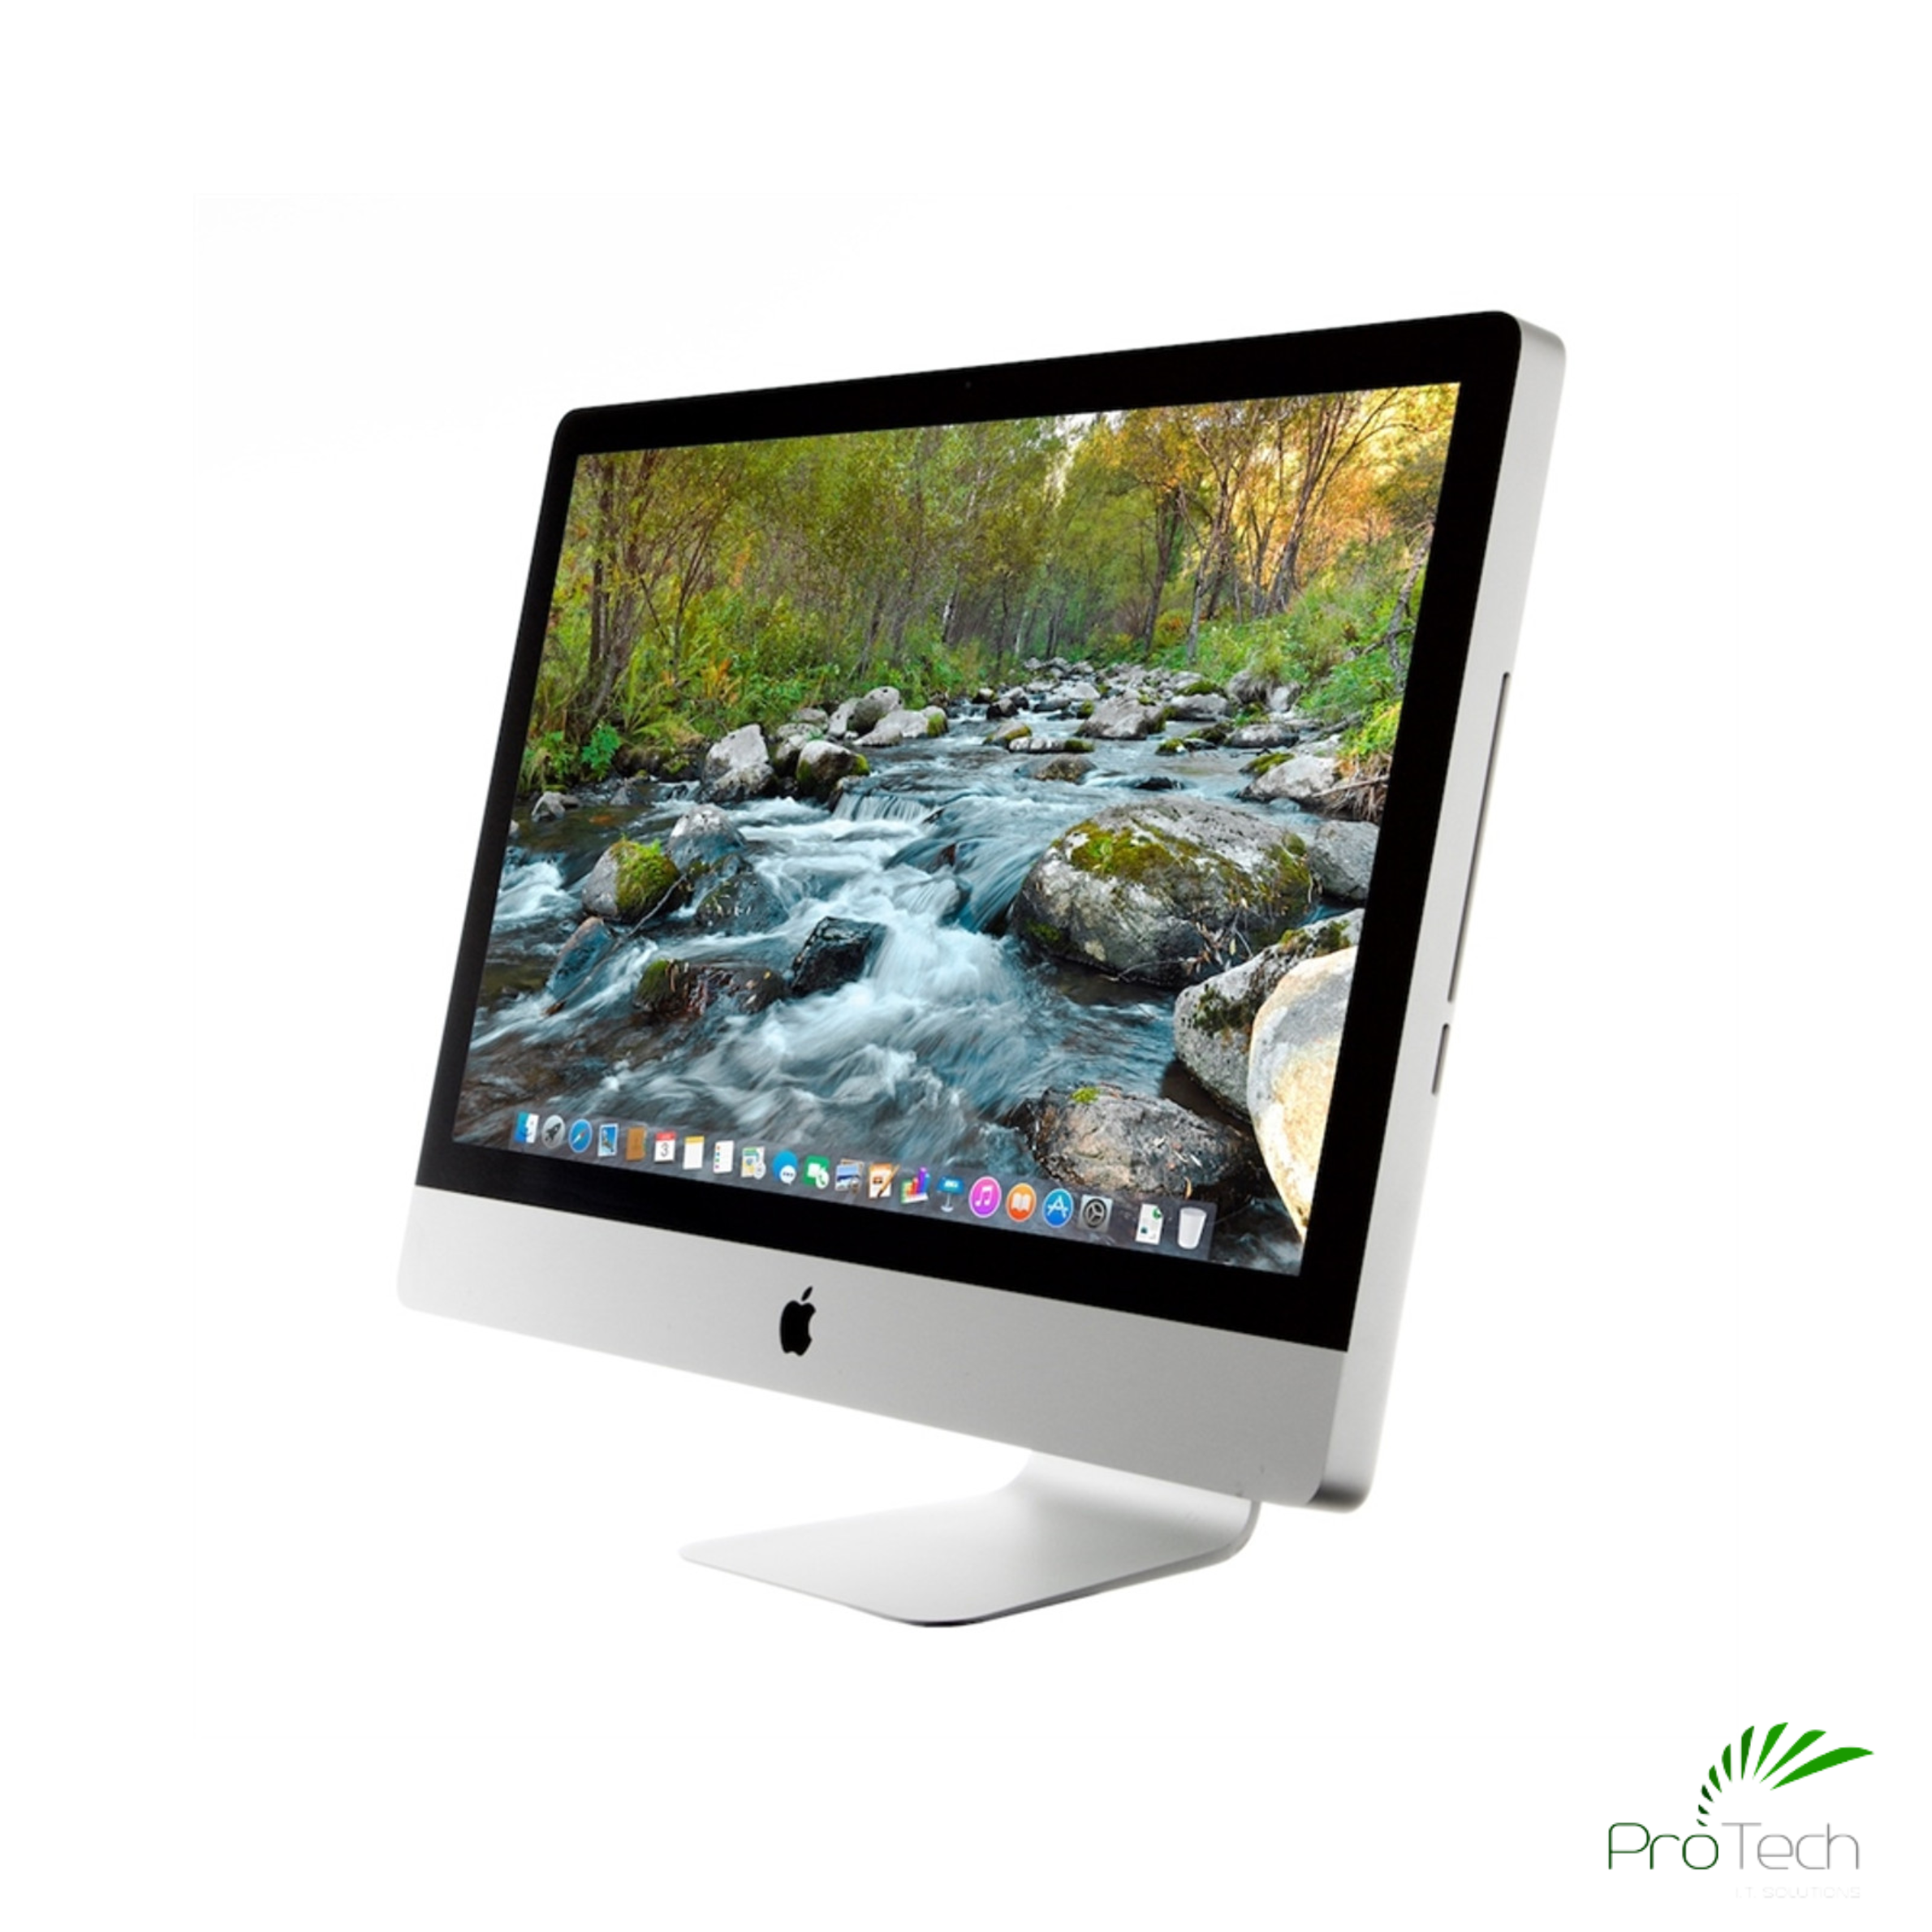 iMac 21.5 inch (2011 mid) core i5 - Macデスクトップ